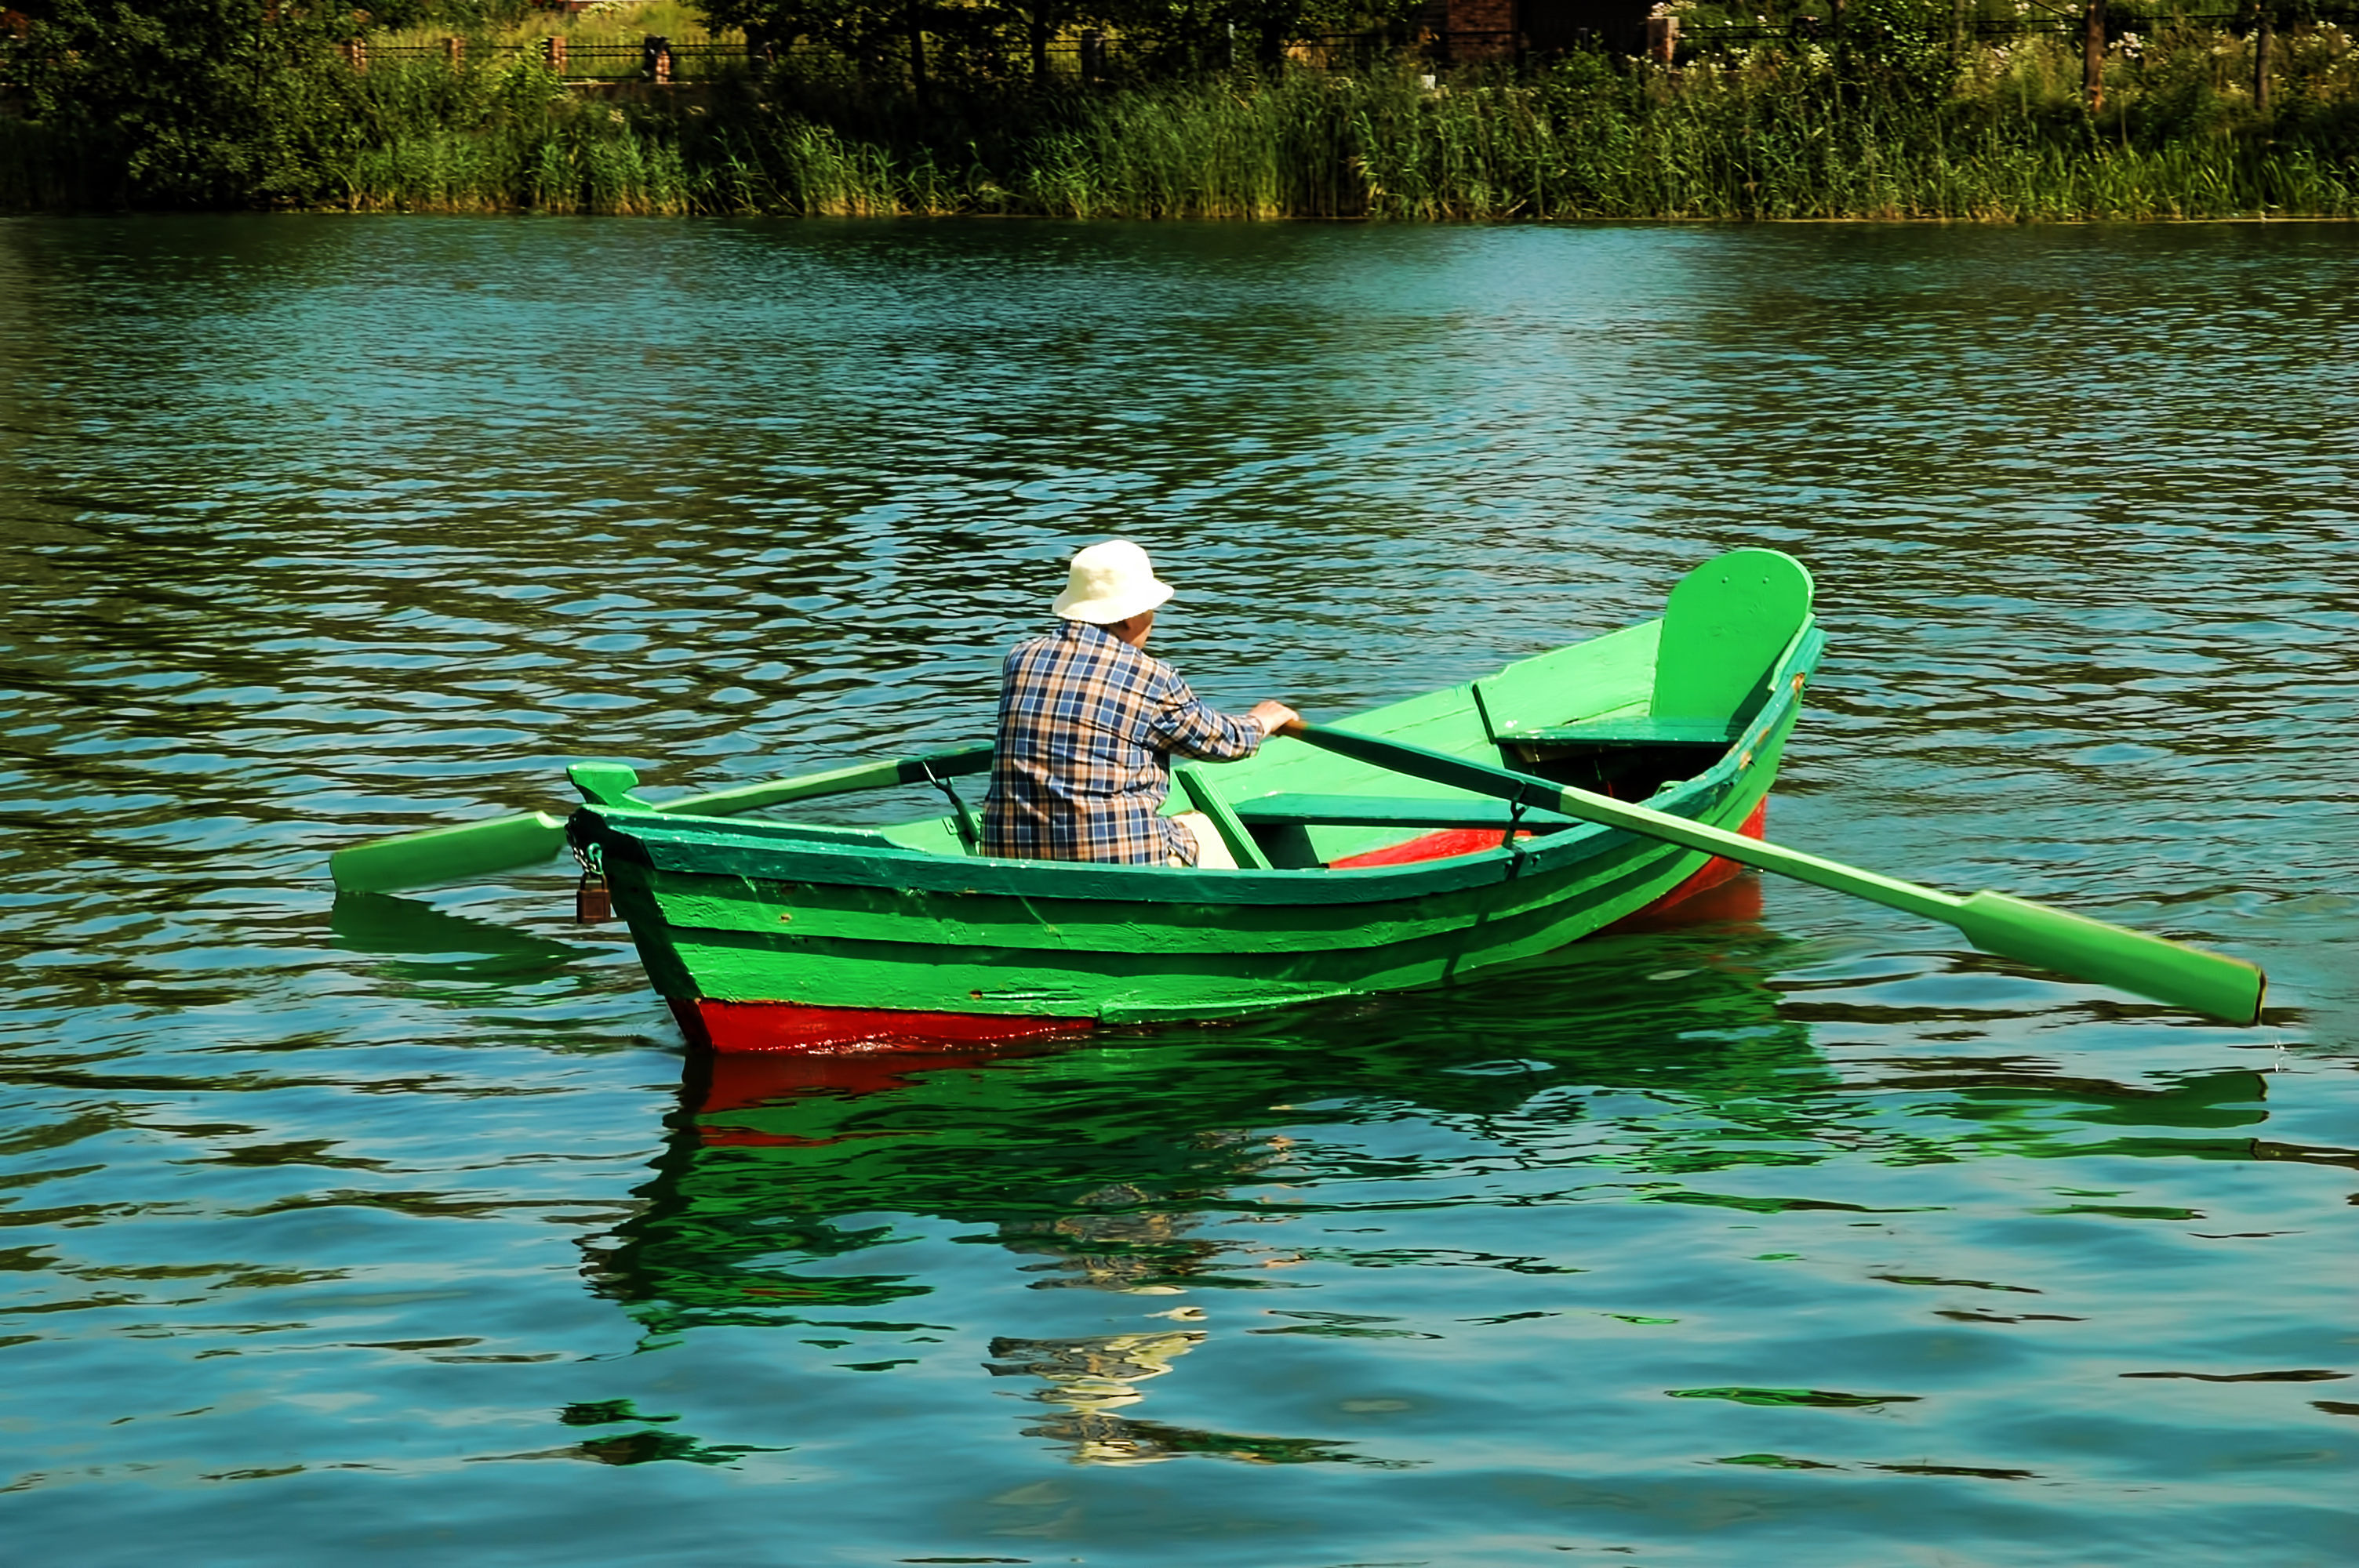 old-man-in-the-boat.jpg